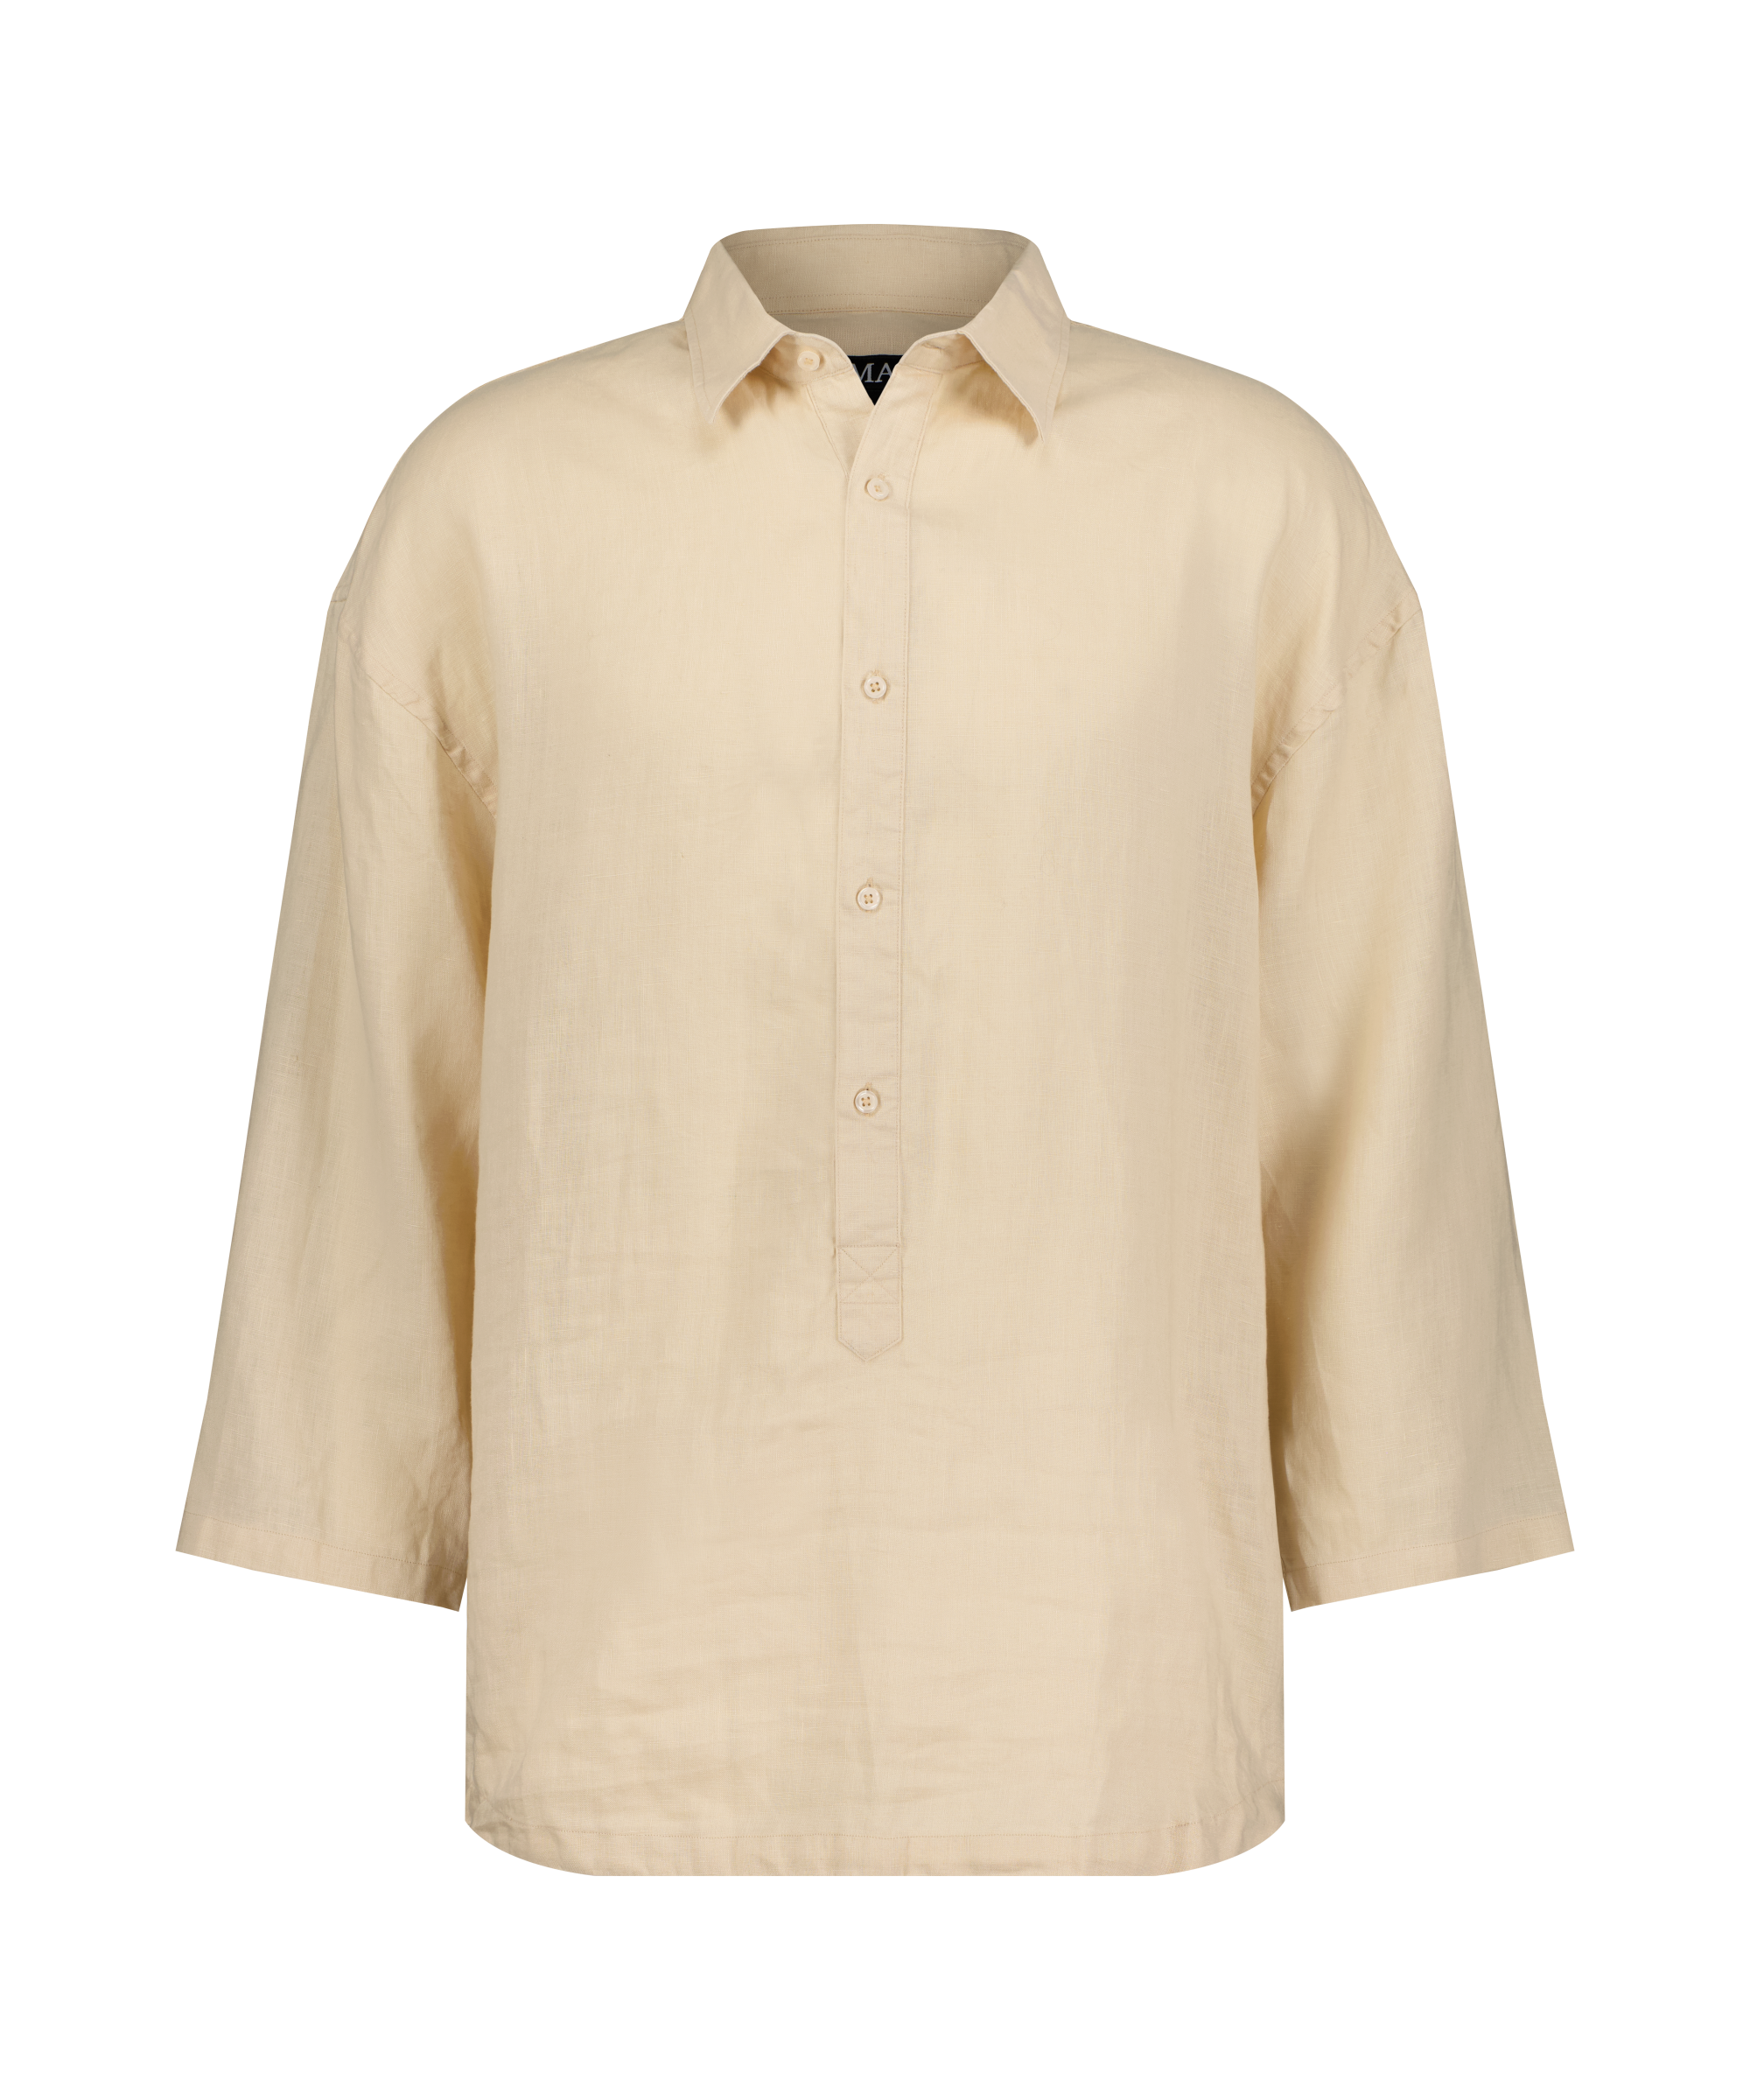  Nomadik Hybrid-Shirt: formelle Eleganz und Bequemlichkeit vereint. Perfekt für heiße Sommertage mit luftigem Leinenstoff und raffinierten Details.